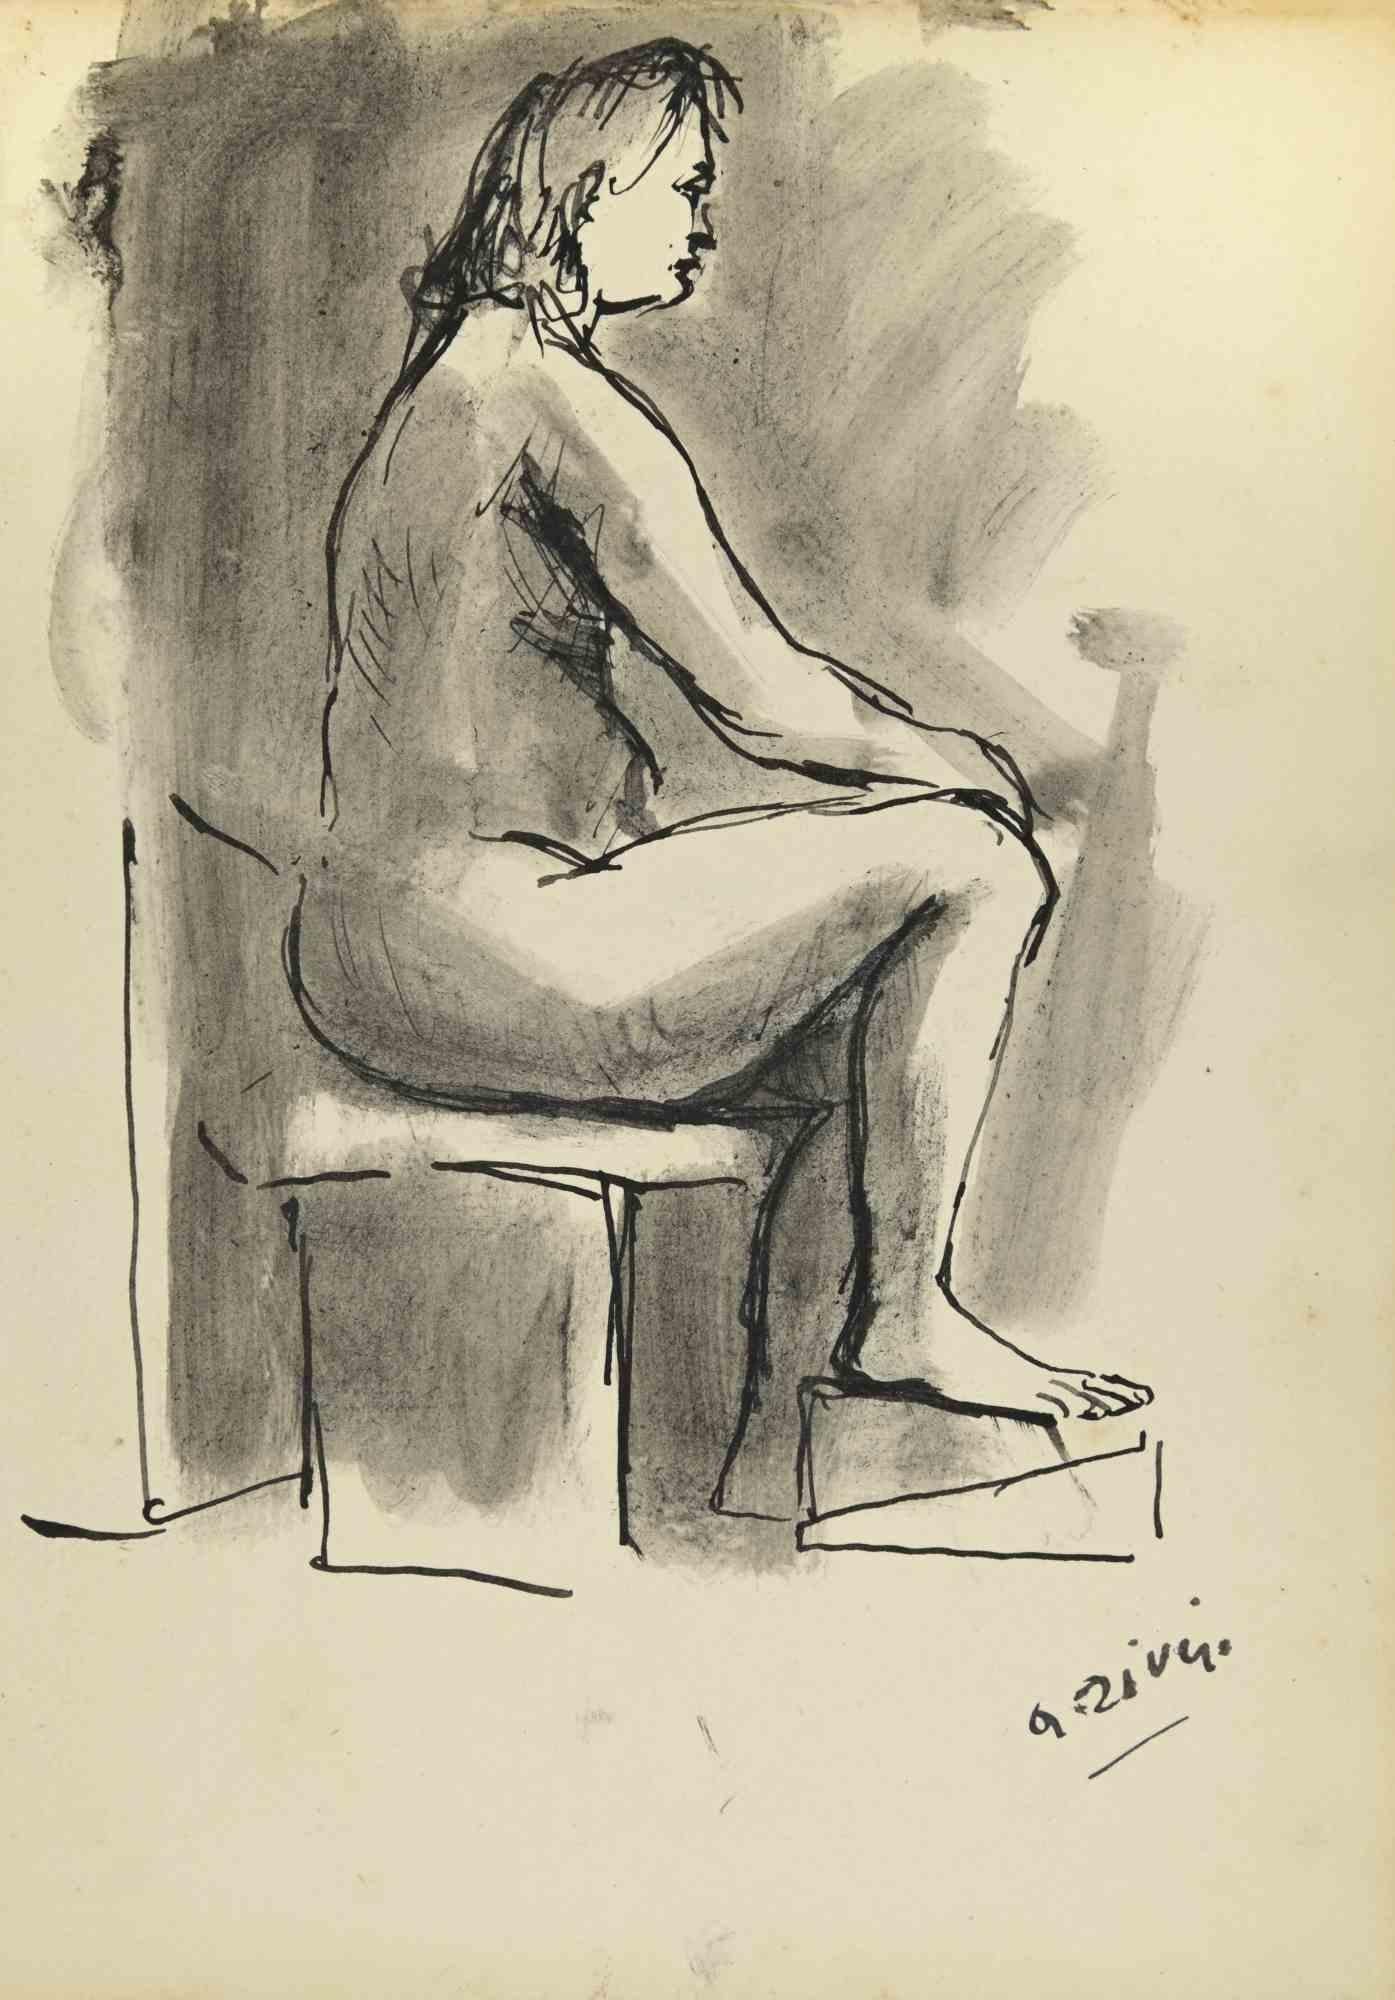 Akt ist eine Zeichnung von Alberto Ziveri aus den 1930er Jahren.

Aquarell und Tinte auf Papier.

Handsigniert und datiert.

In gutem Zustand mit leichten Stockflecken.

Das Kunstwerk wird durch geschickte Striche meisterhaft dargestellt.

Alberto